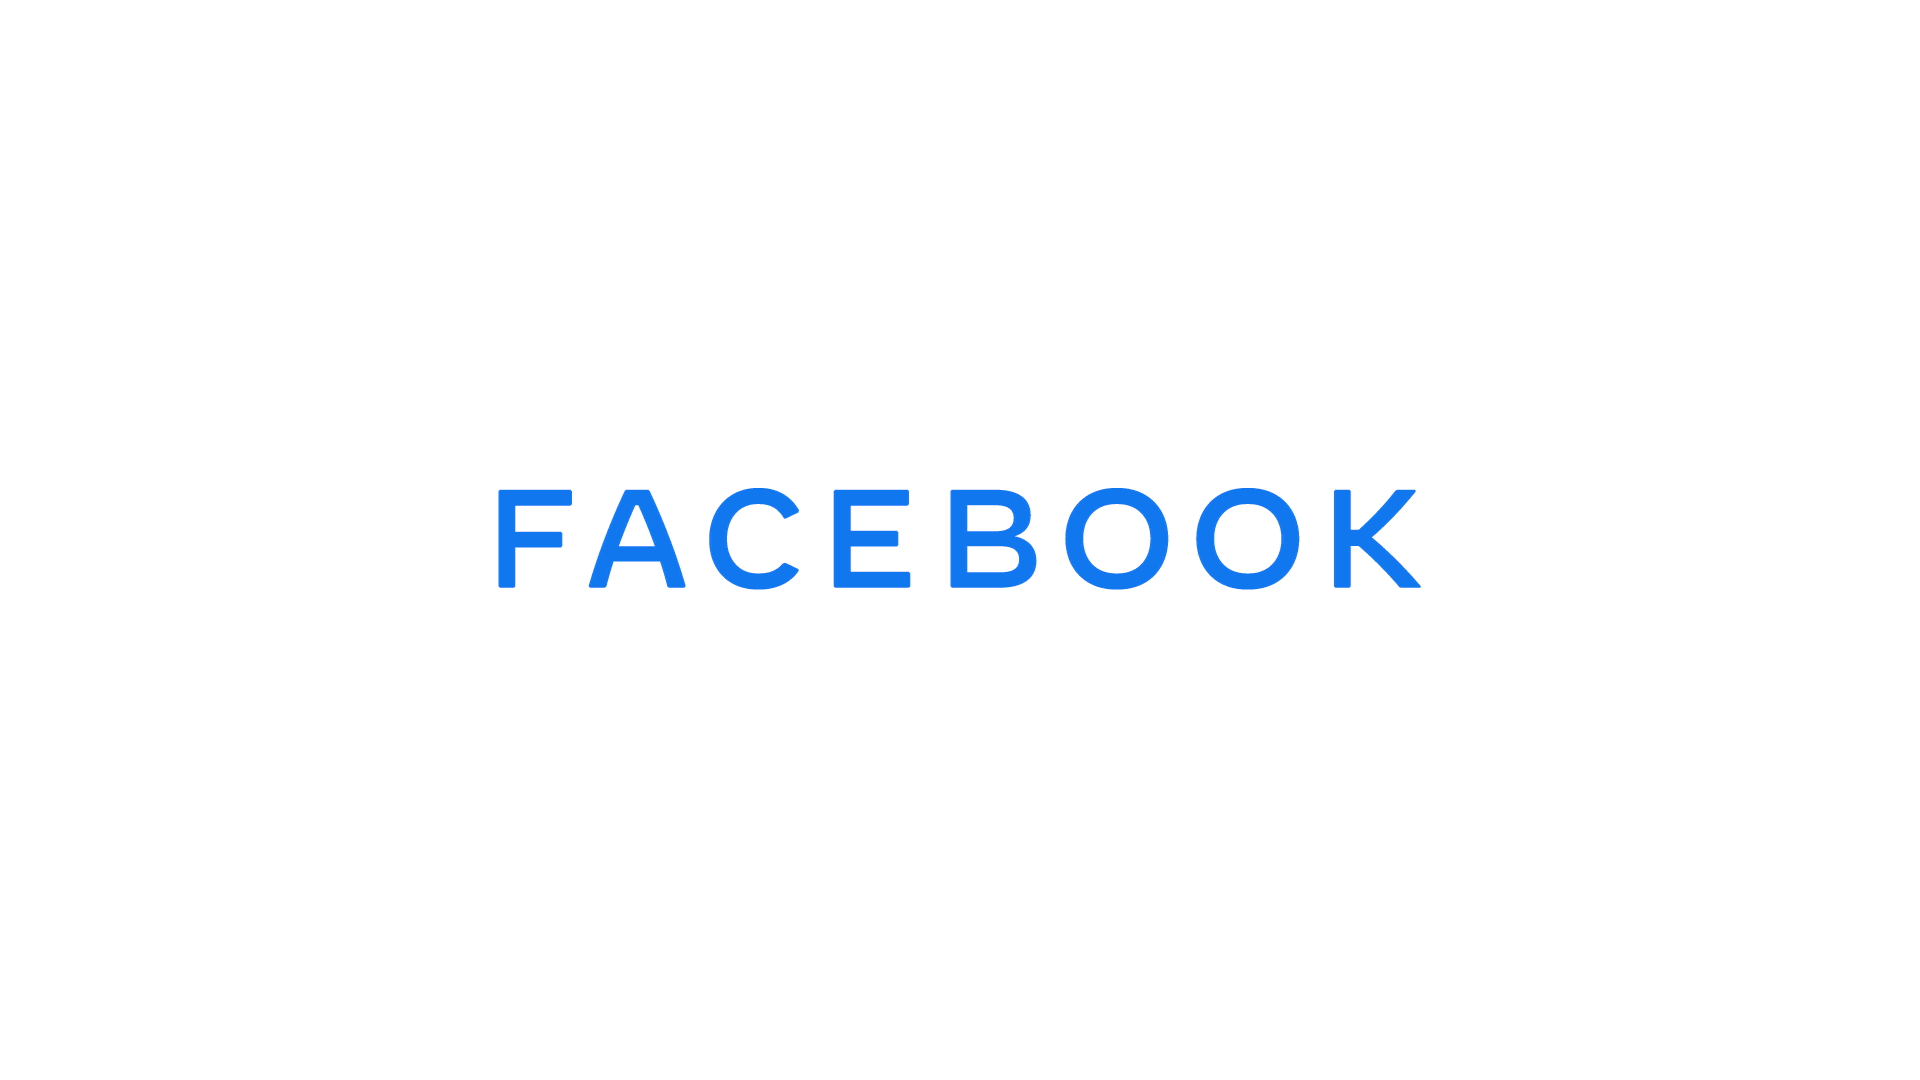 Facebook 的新企業標誌不再只用藍色，還可以因應產品而轉用其他顏色。